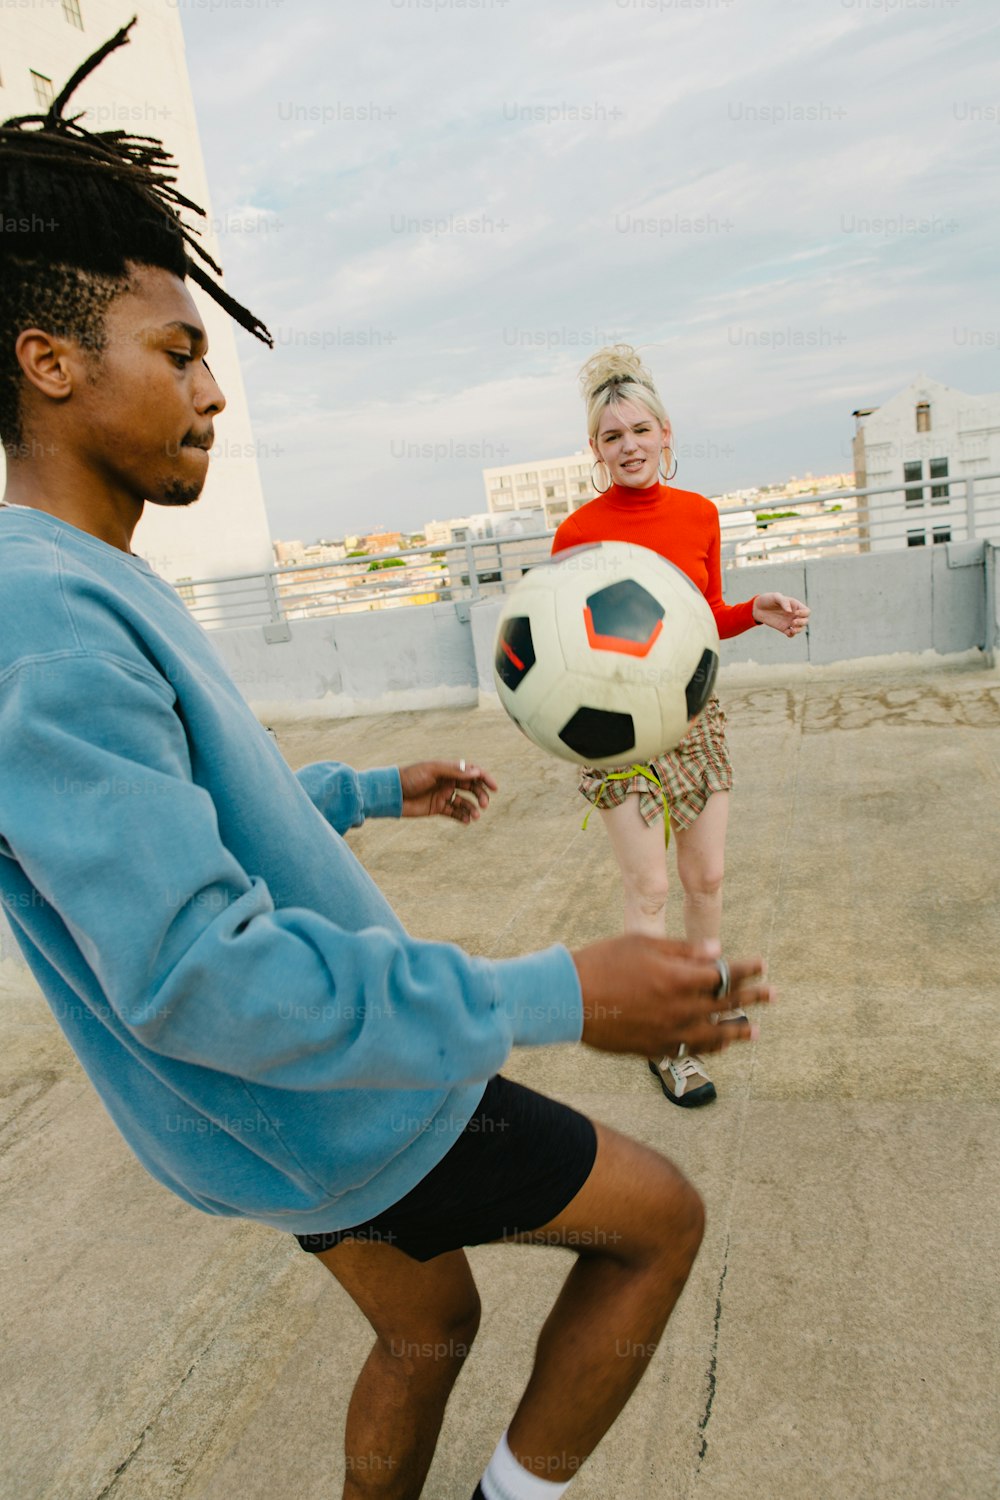 Un homme avec des dreadlocks jouant avec un ballon de football